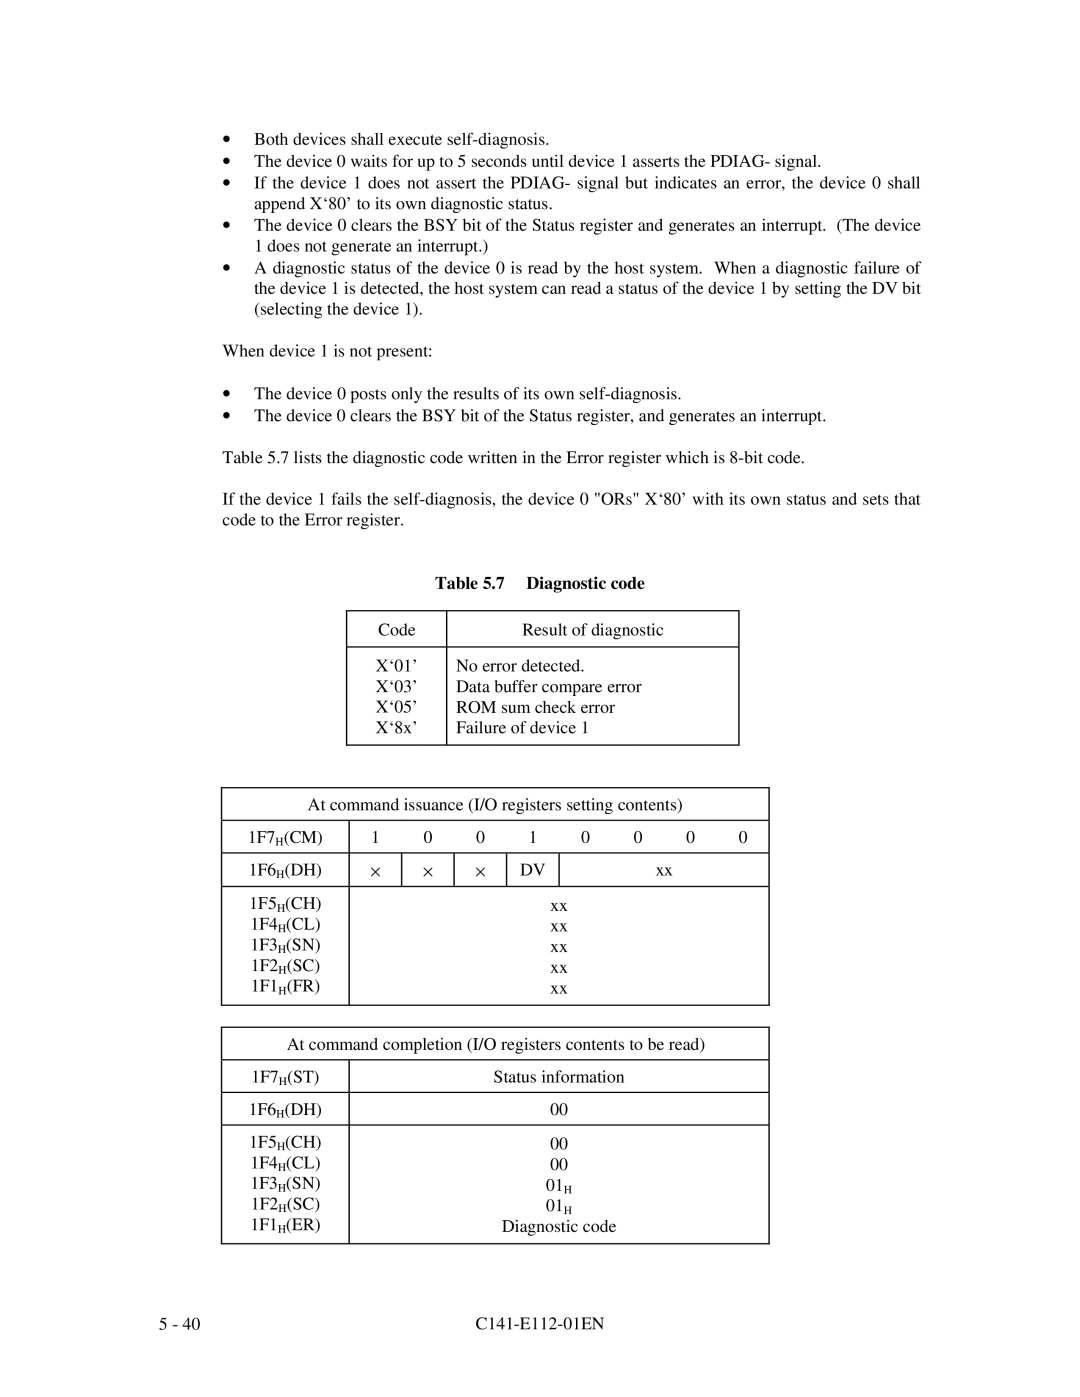 Fujitsu MPG3XXXAH manual 7 Diagnostic code 